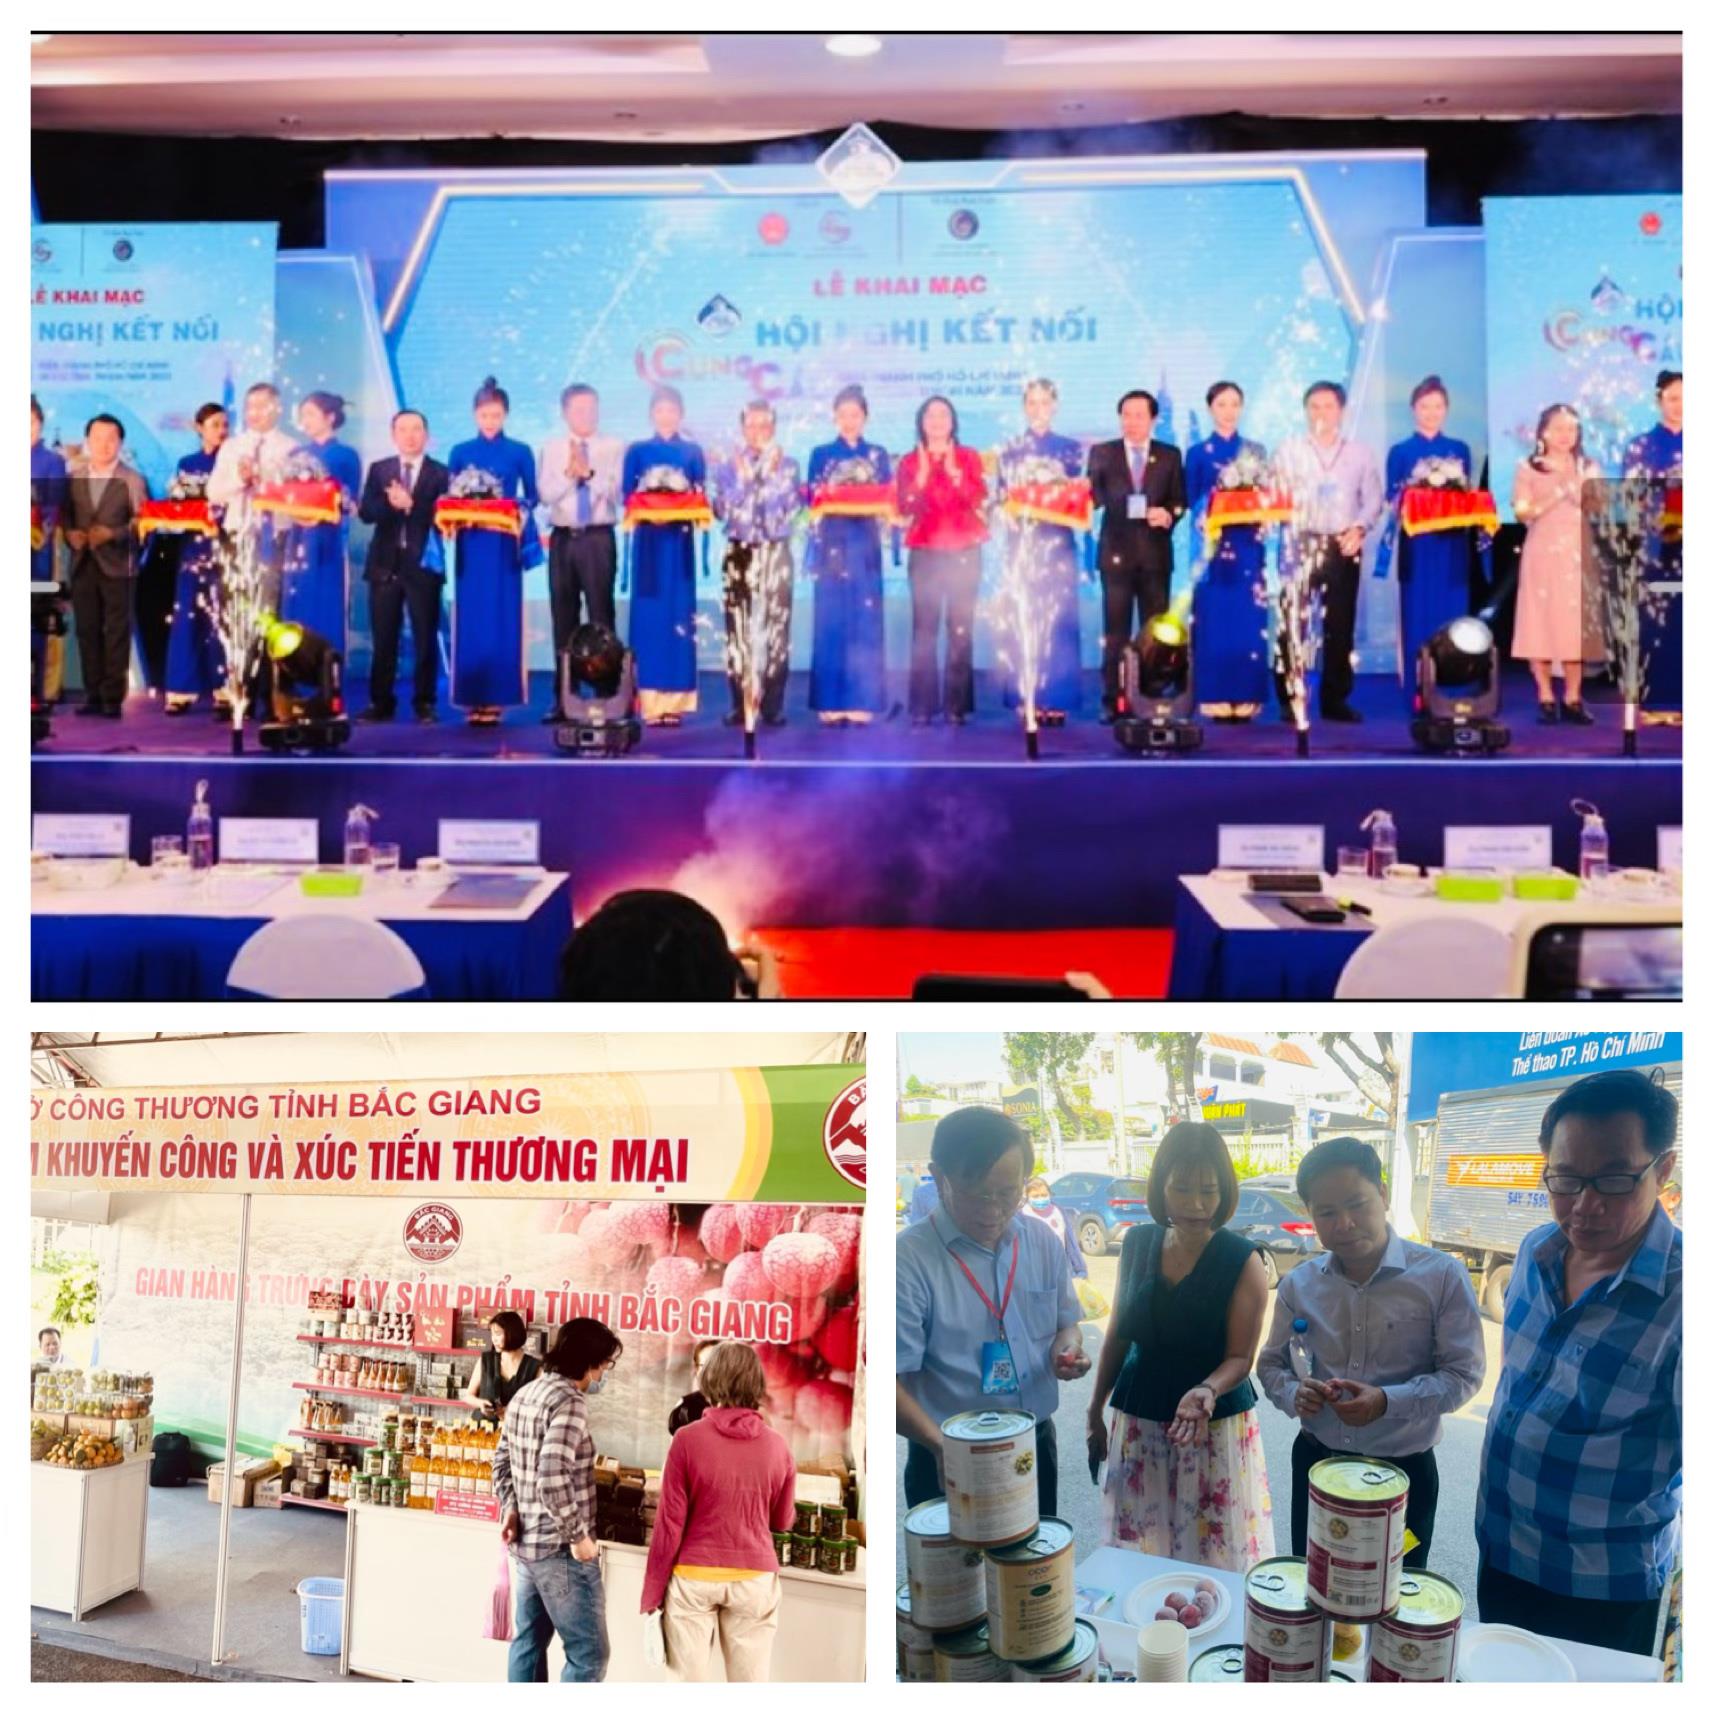 Trung tâm Khuyến công & XTTM tỉnh Bắc Giang tham dự Hội Nghị kết nối cung, cầu giữ thành phố Hồ Chí Minh và các tỉnh thành năm 2023